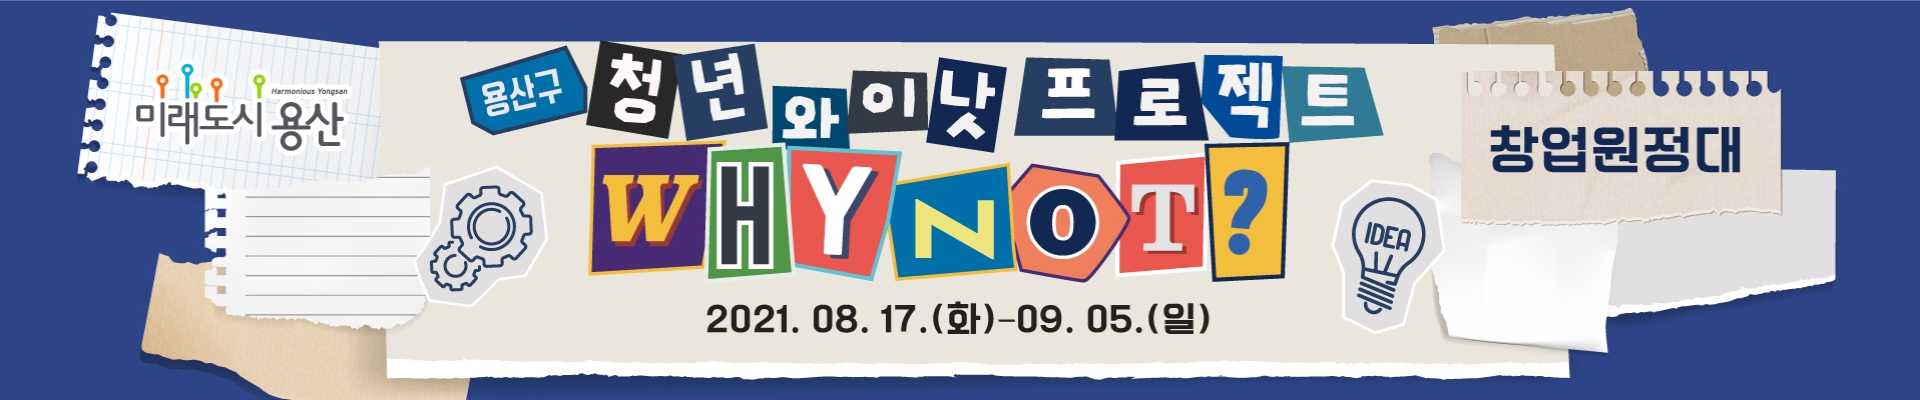 [서울] 청년 와이낫(Why not?) 프로젝트 : 창업원정대 (~9/5)